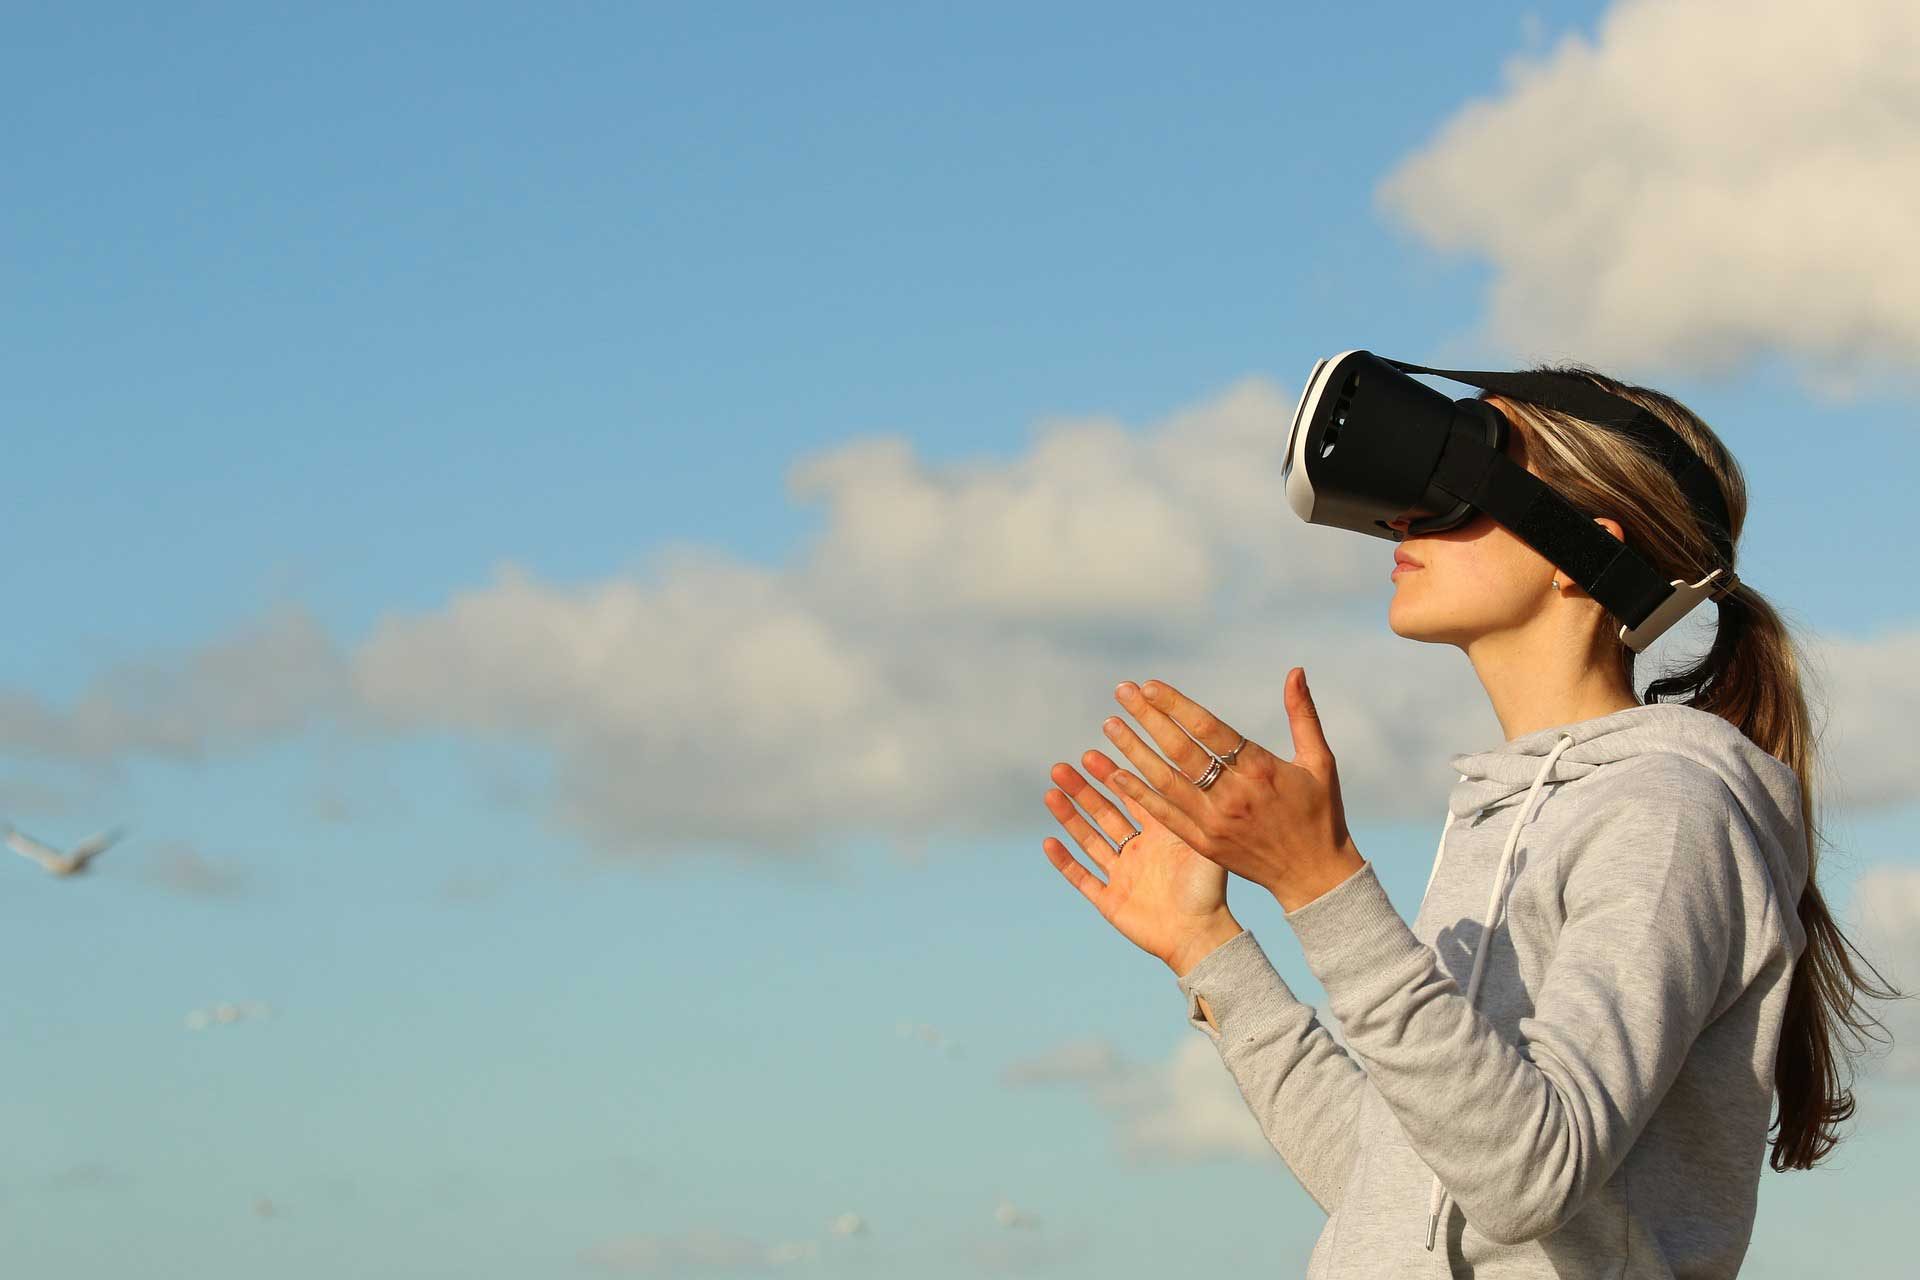 Die Zukunft des Videos: Virtual Reality und Augmented Reality erklärt